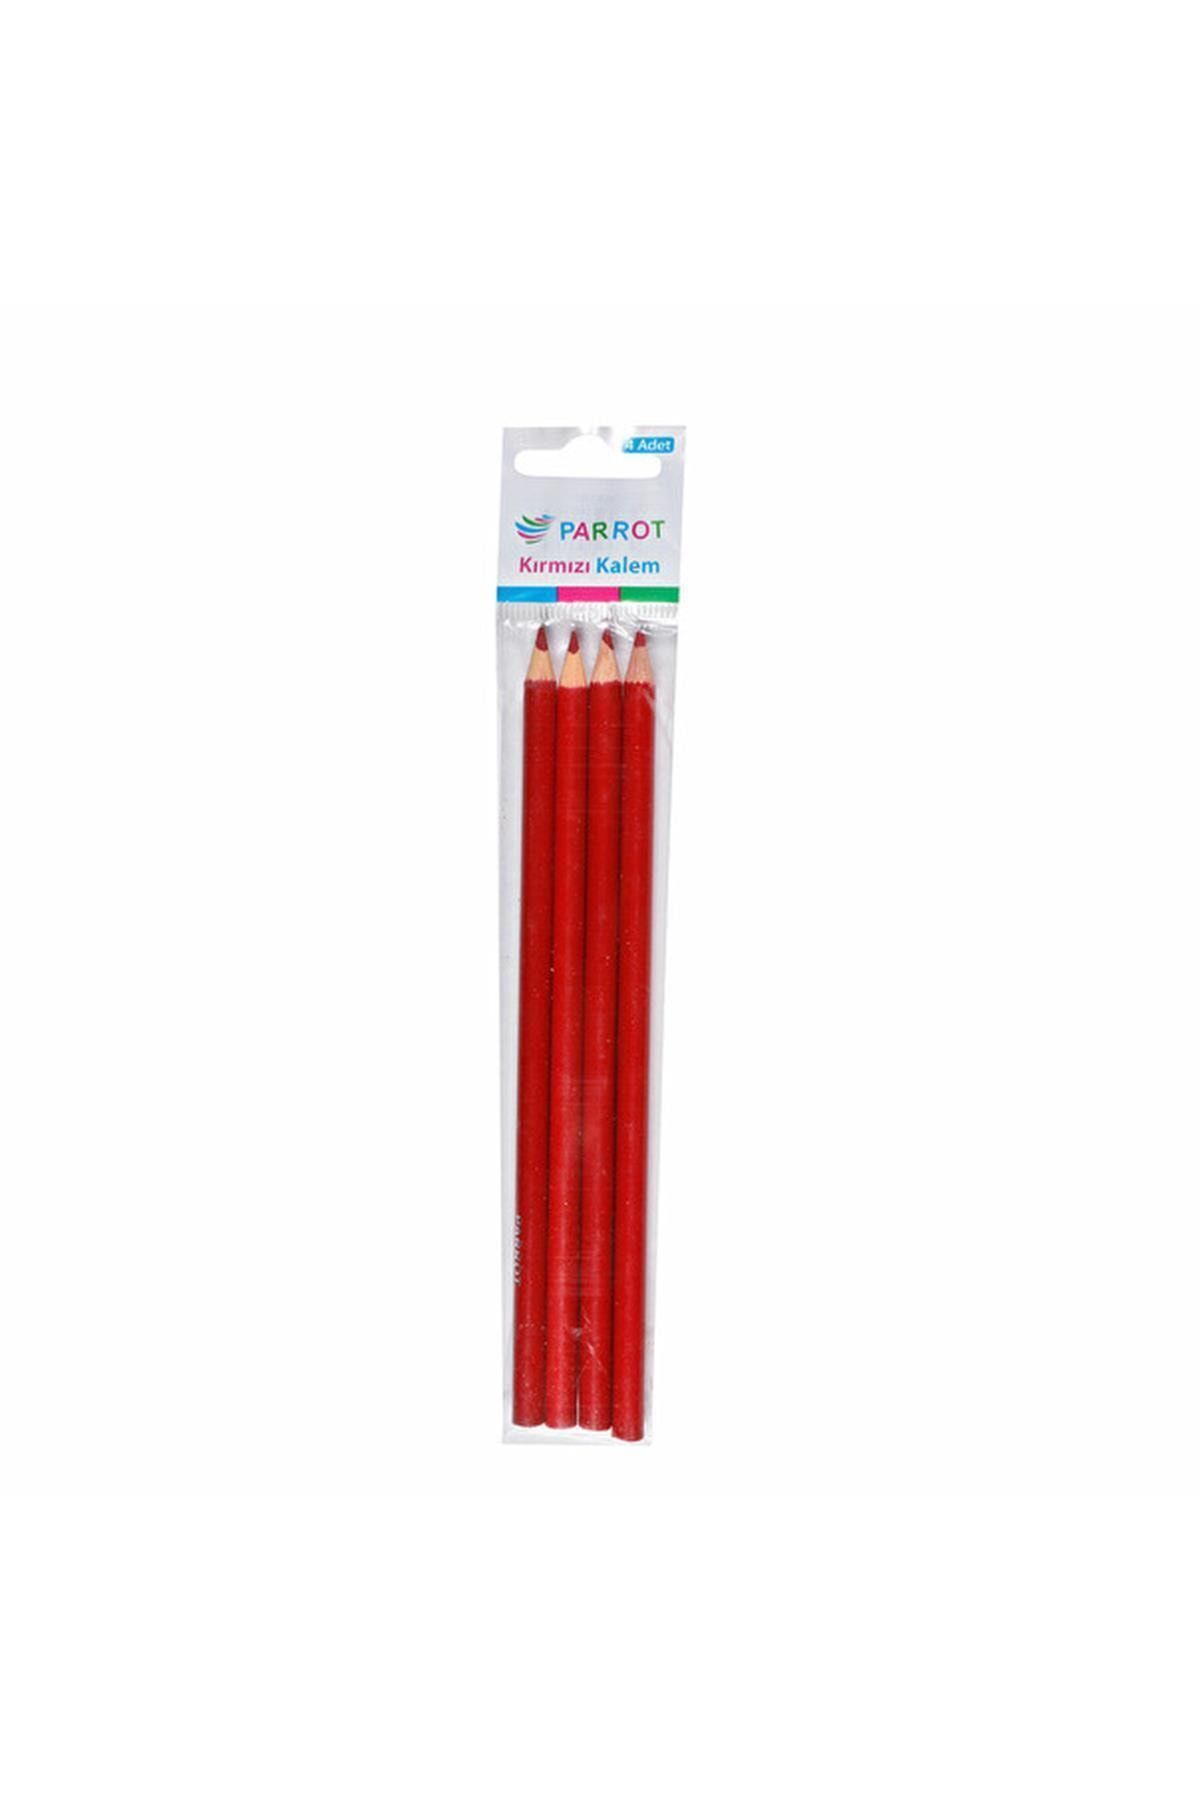 Bigpoint Marka: Bigpoınt 4'lü Kırmızı Kalem Kategori: Kurşun Kalemler